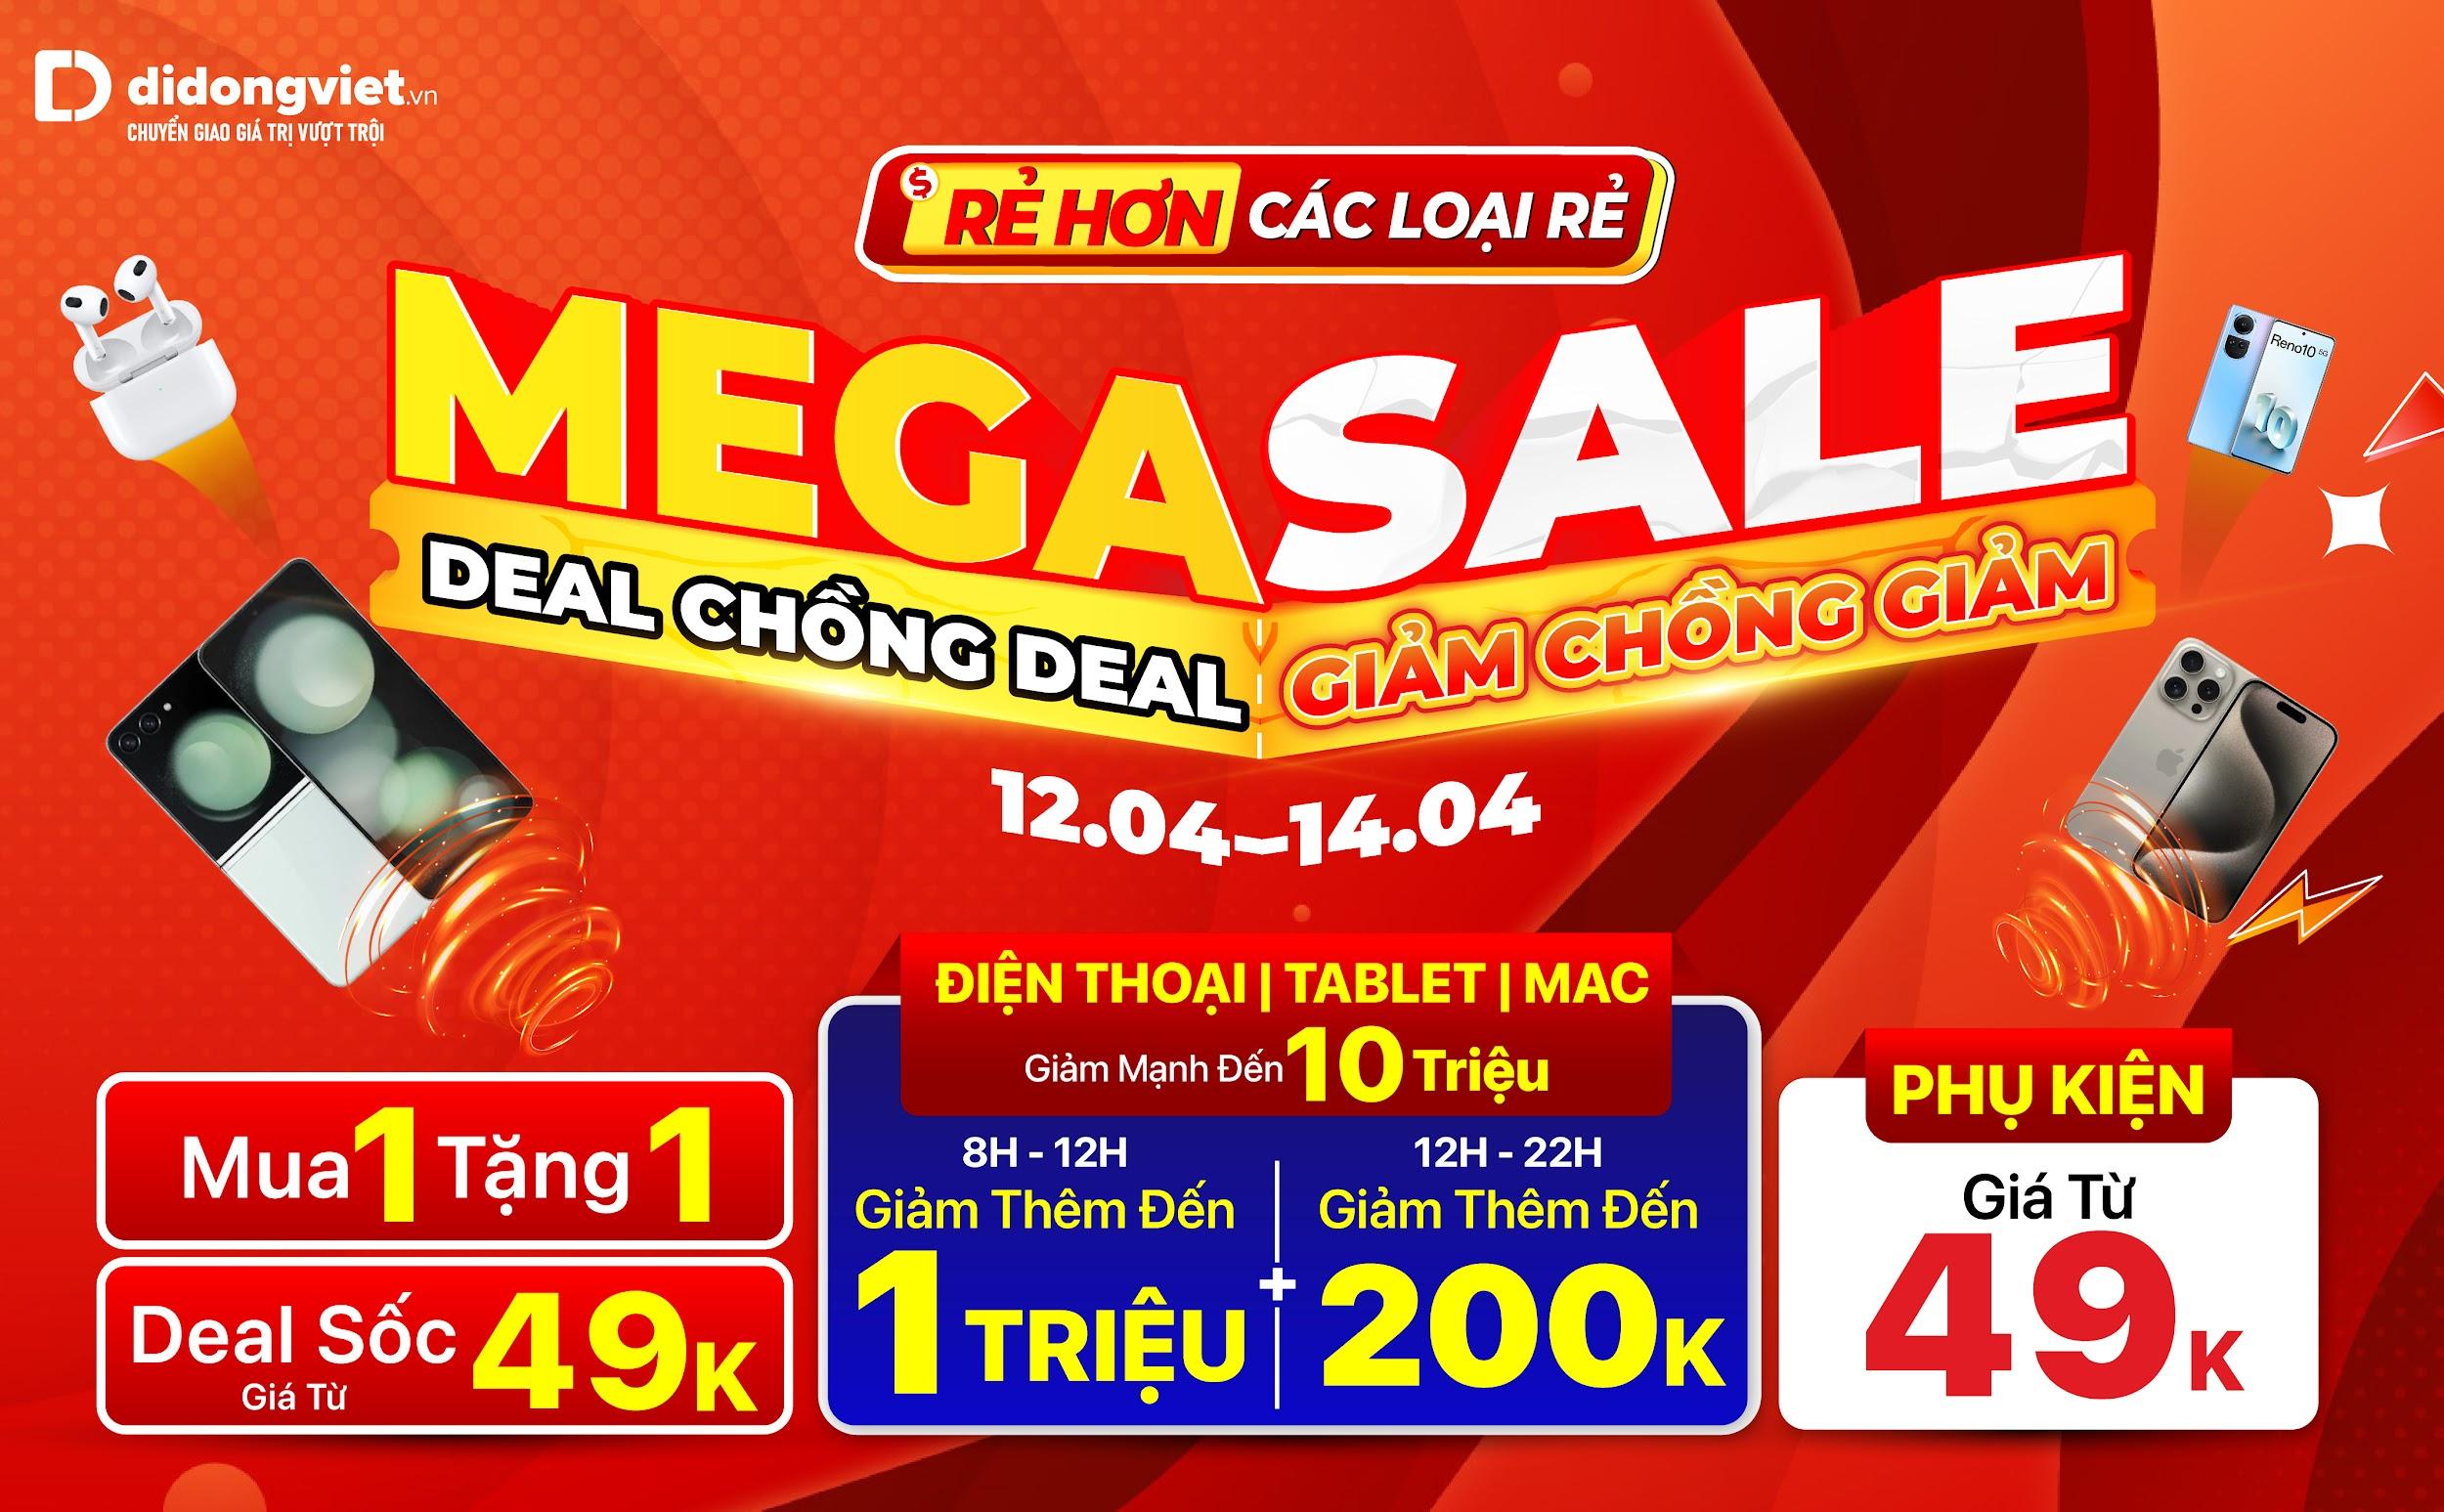 Mega Sale tháng 4: Điện thoại giảm đến 10 triệu đồng, tặng Galaxy Fit 3 0Đ, deal chồng deal giảm thêm đến 1 triệu đồng